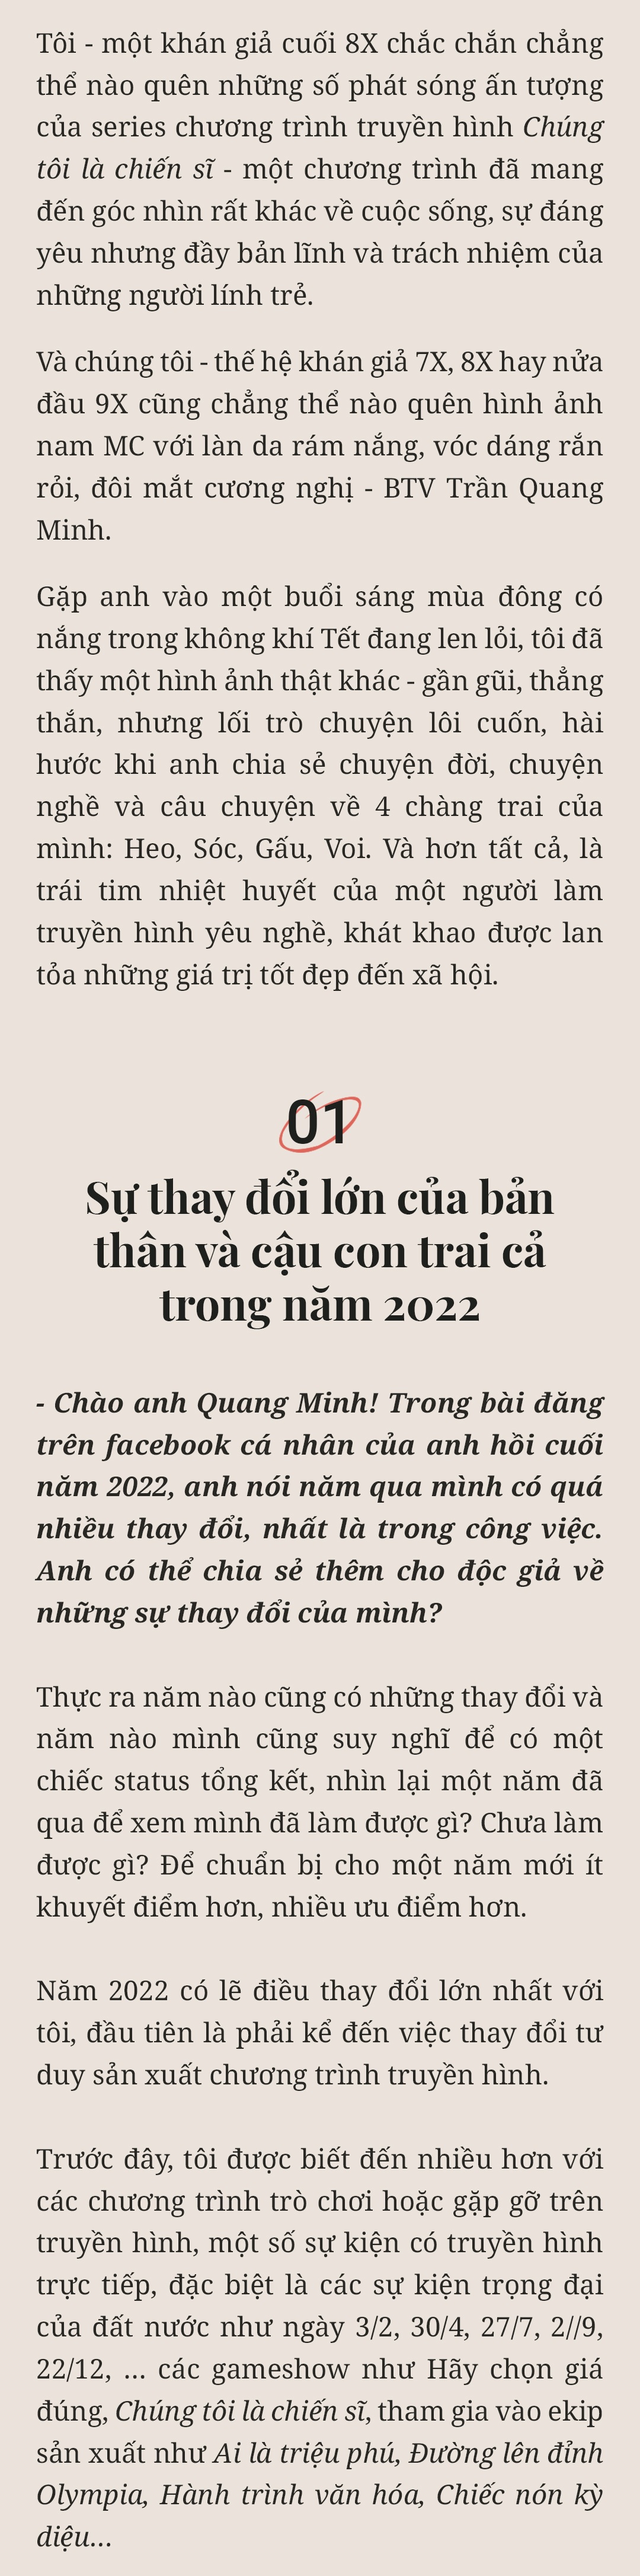 MC Trần Quang Minh: amp;#34;Nếu mừng tuổi ít, các con thấy buồn một thì mình tủi thân mườiamp;#34; - 4